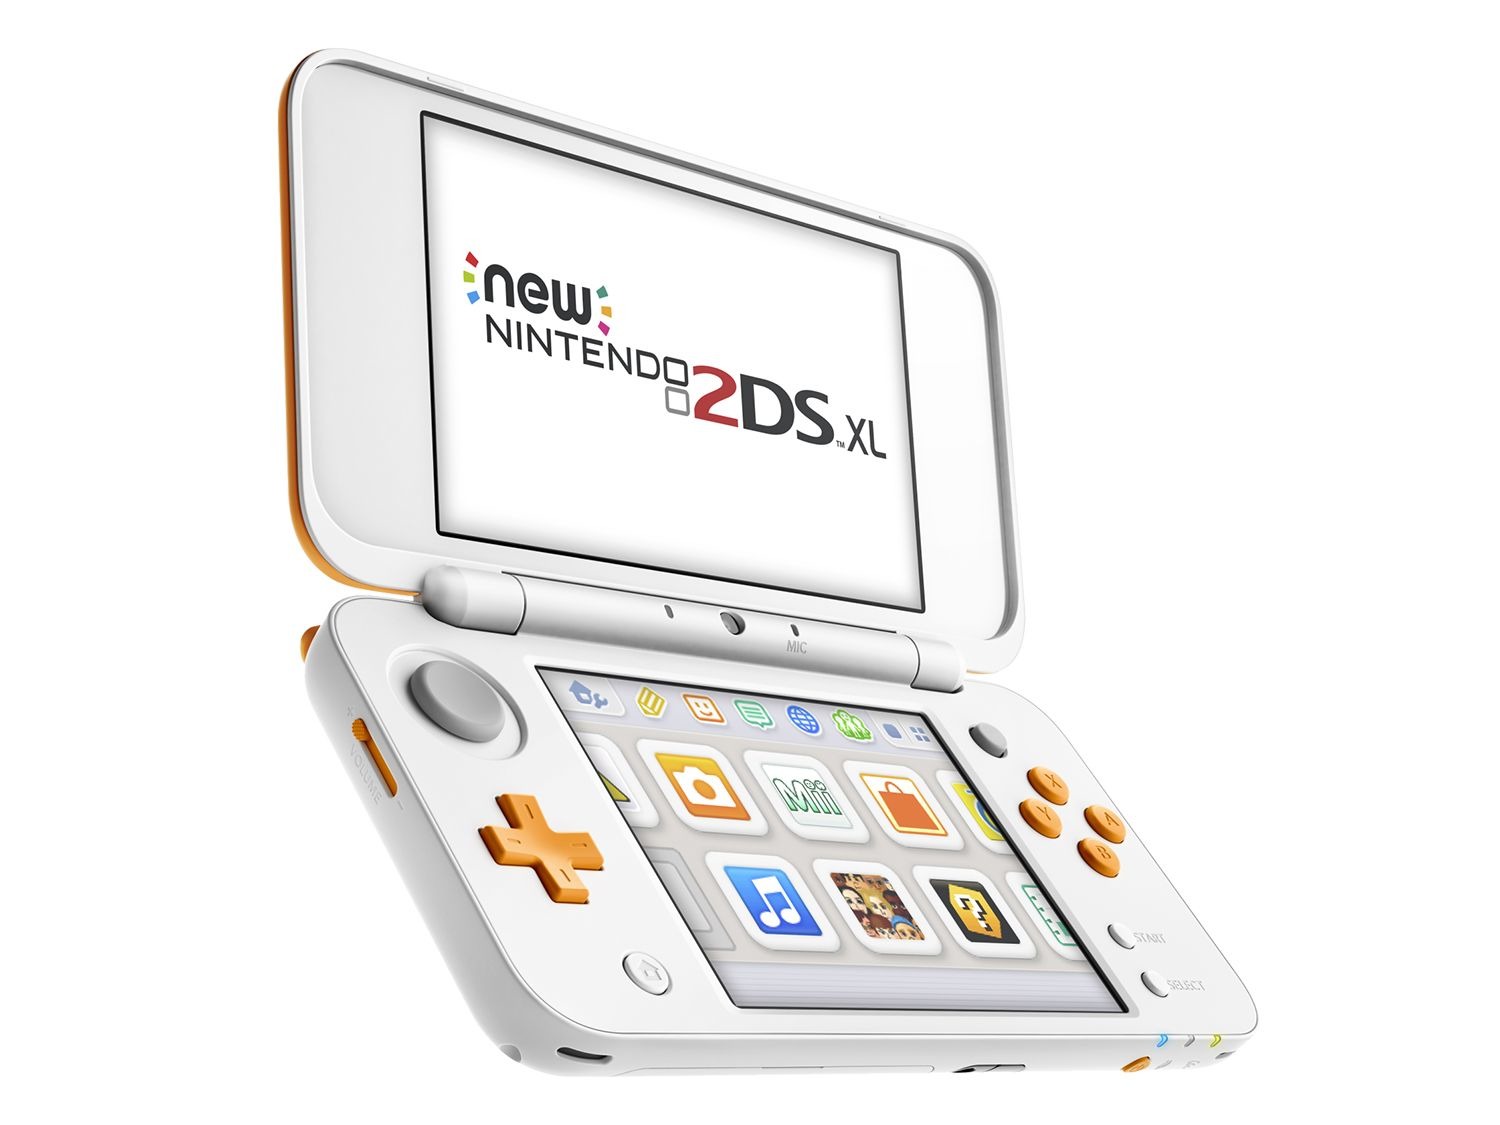 Nintendo 2ds XL. New Nintendo 2ds XL. Nintendo DS XL. Nintendo 2ds XL White.